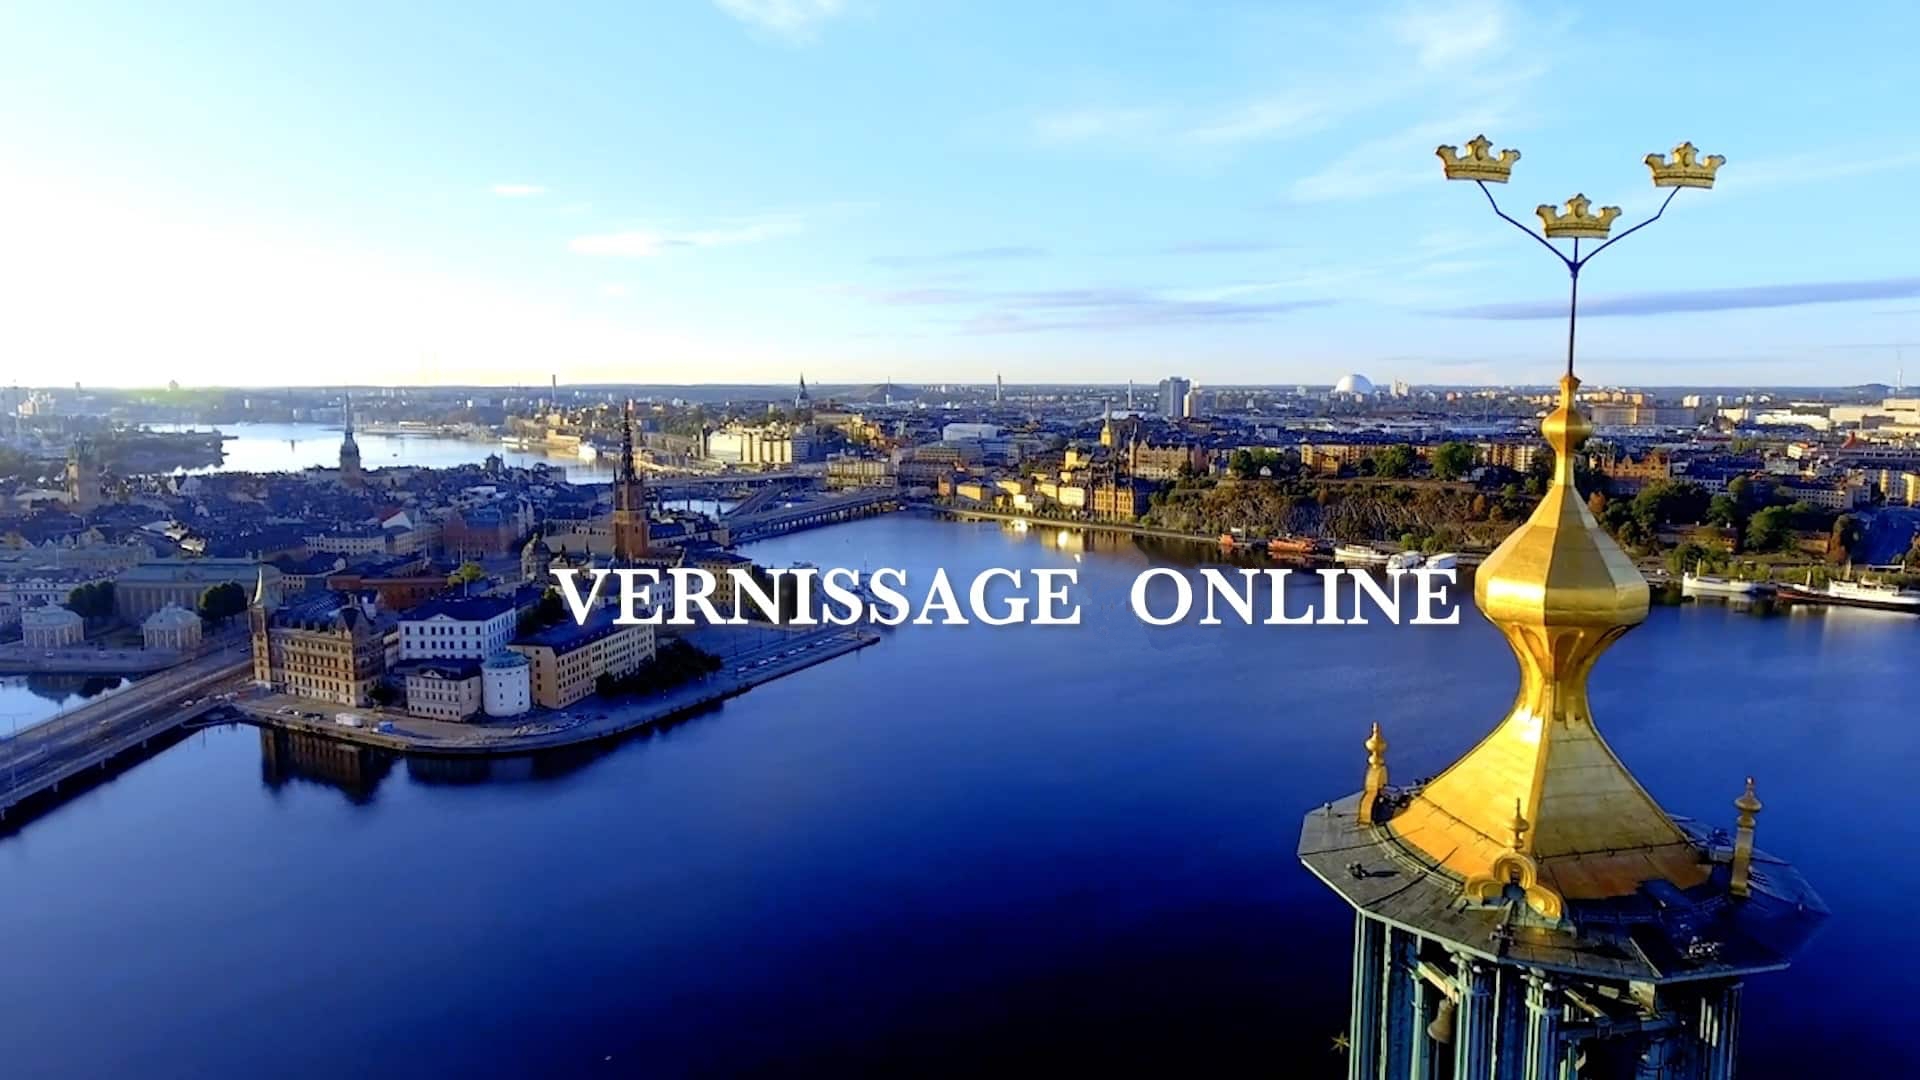 Vernissage online på Galleri Stockholm.